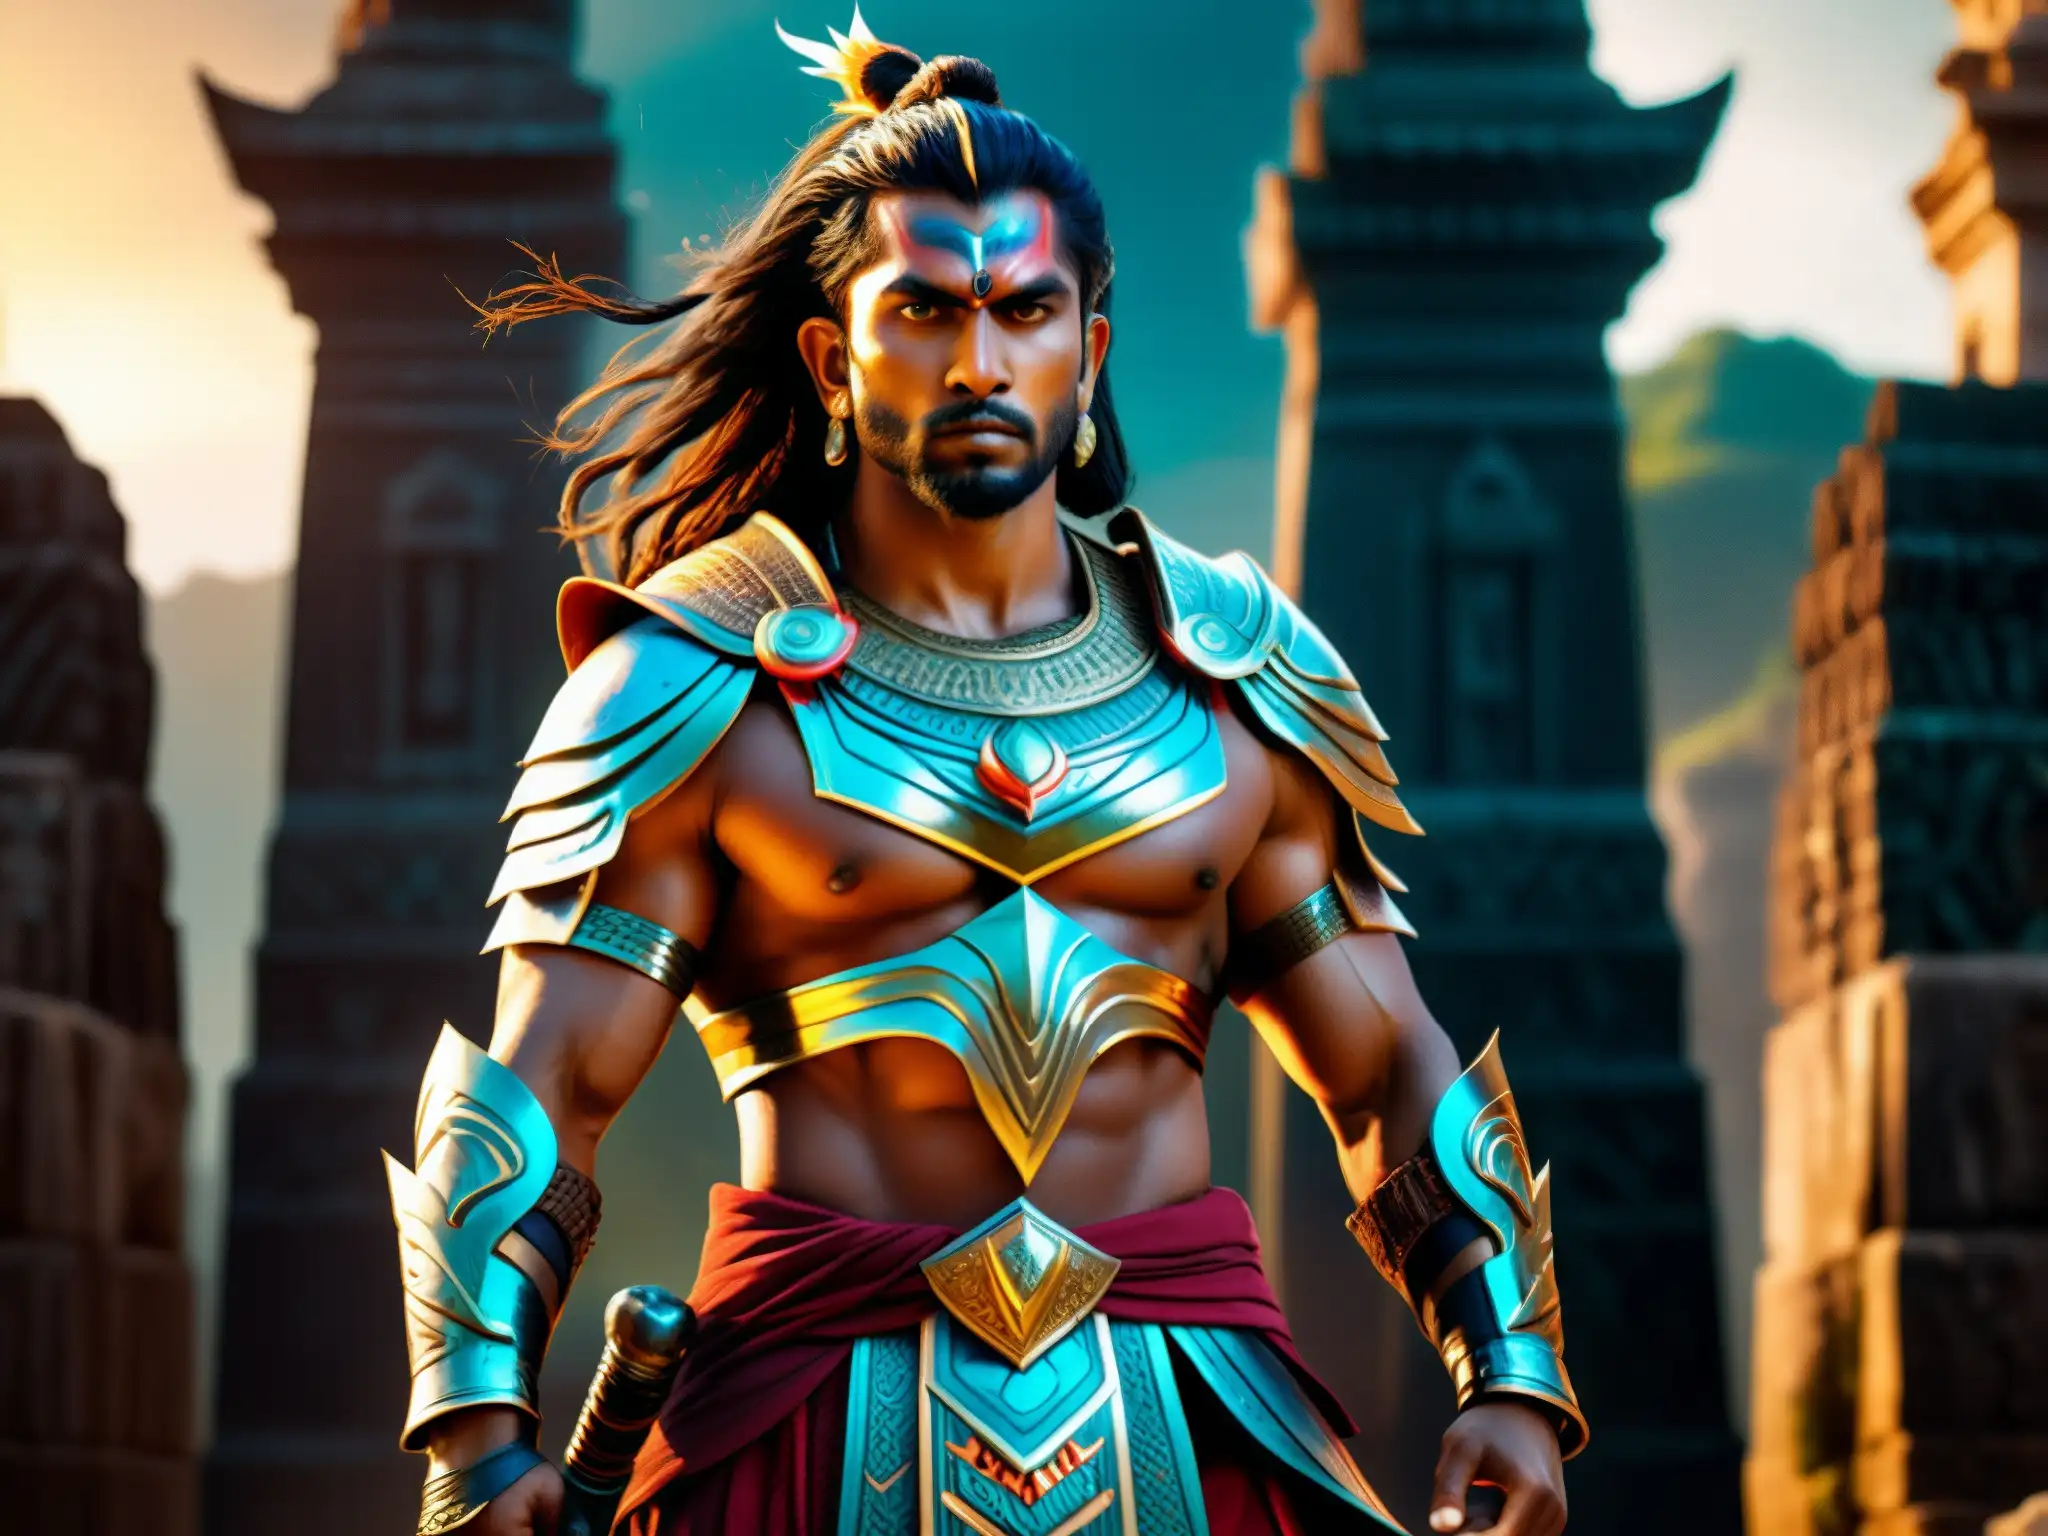 Un guerrero místico de la mitología del sur de Asia, listo para la batalla, rodeado de energía mística y ruinas antiguas